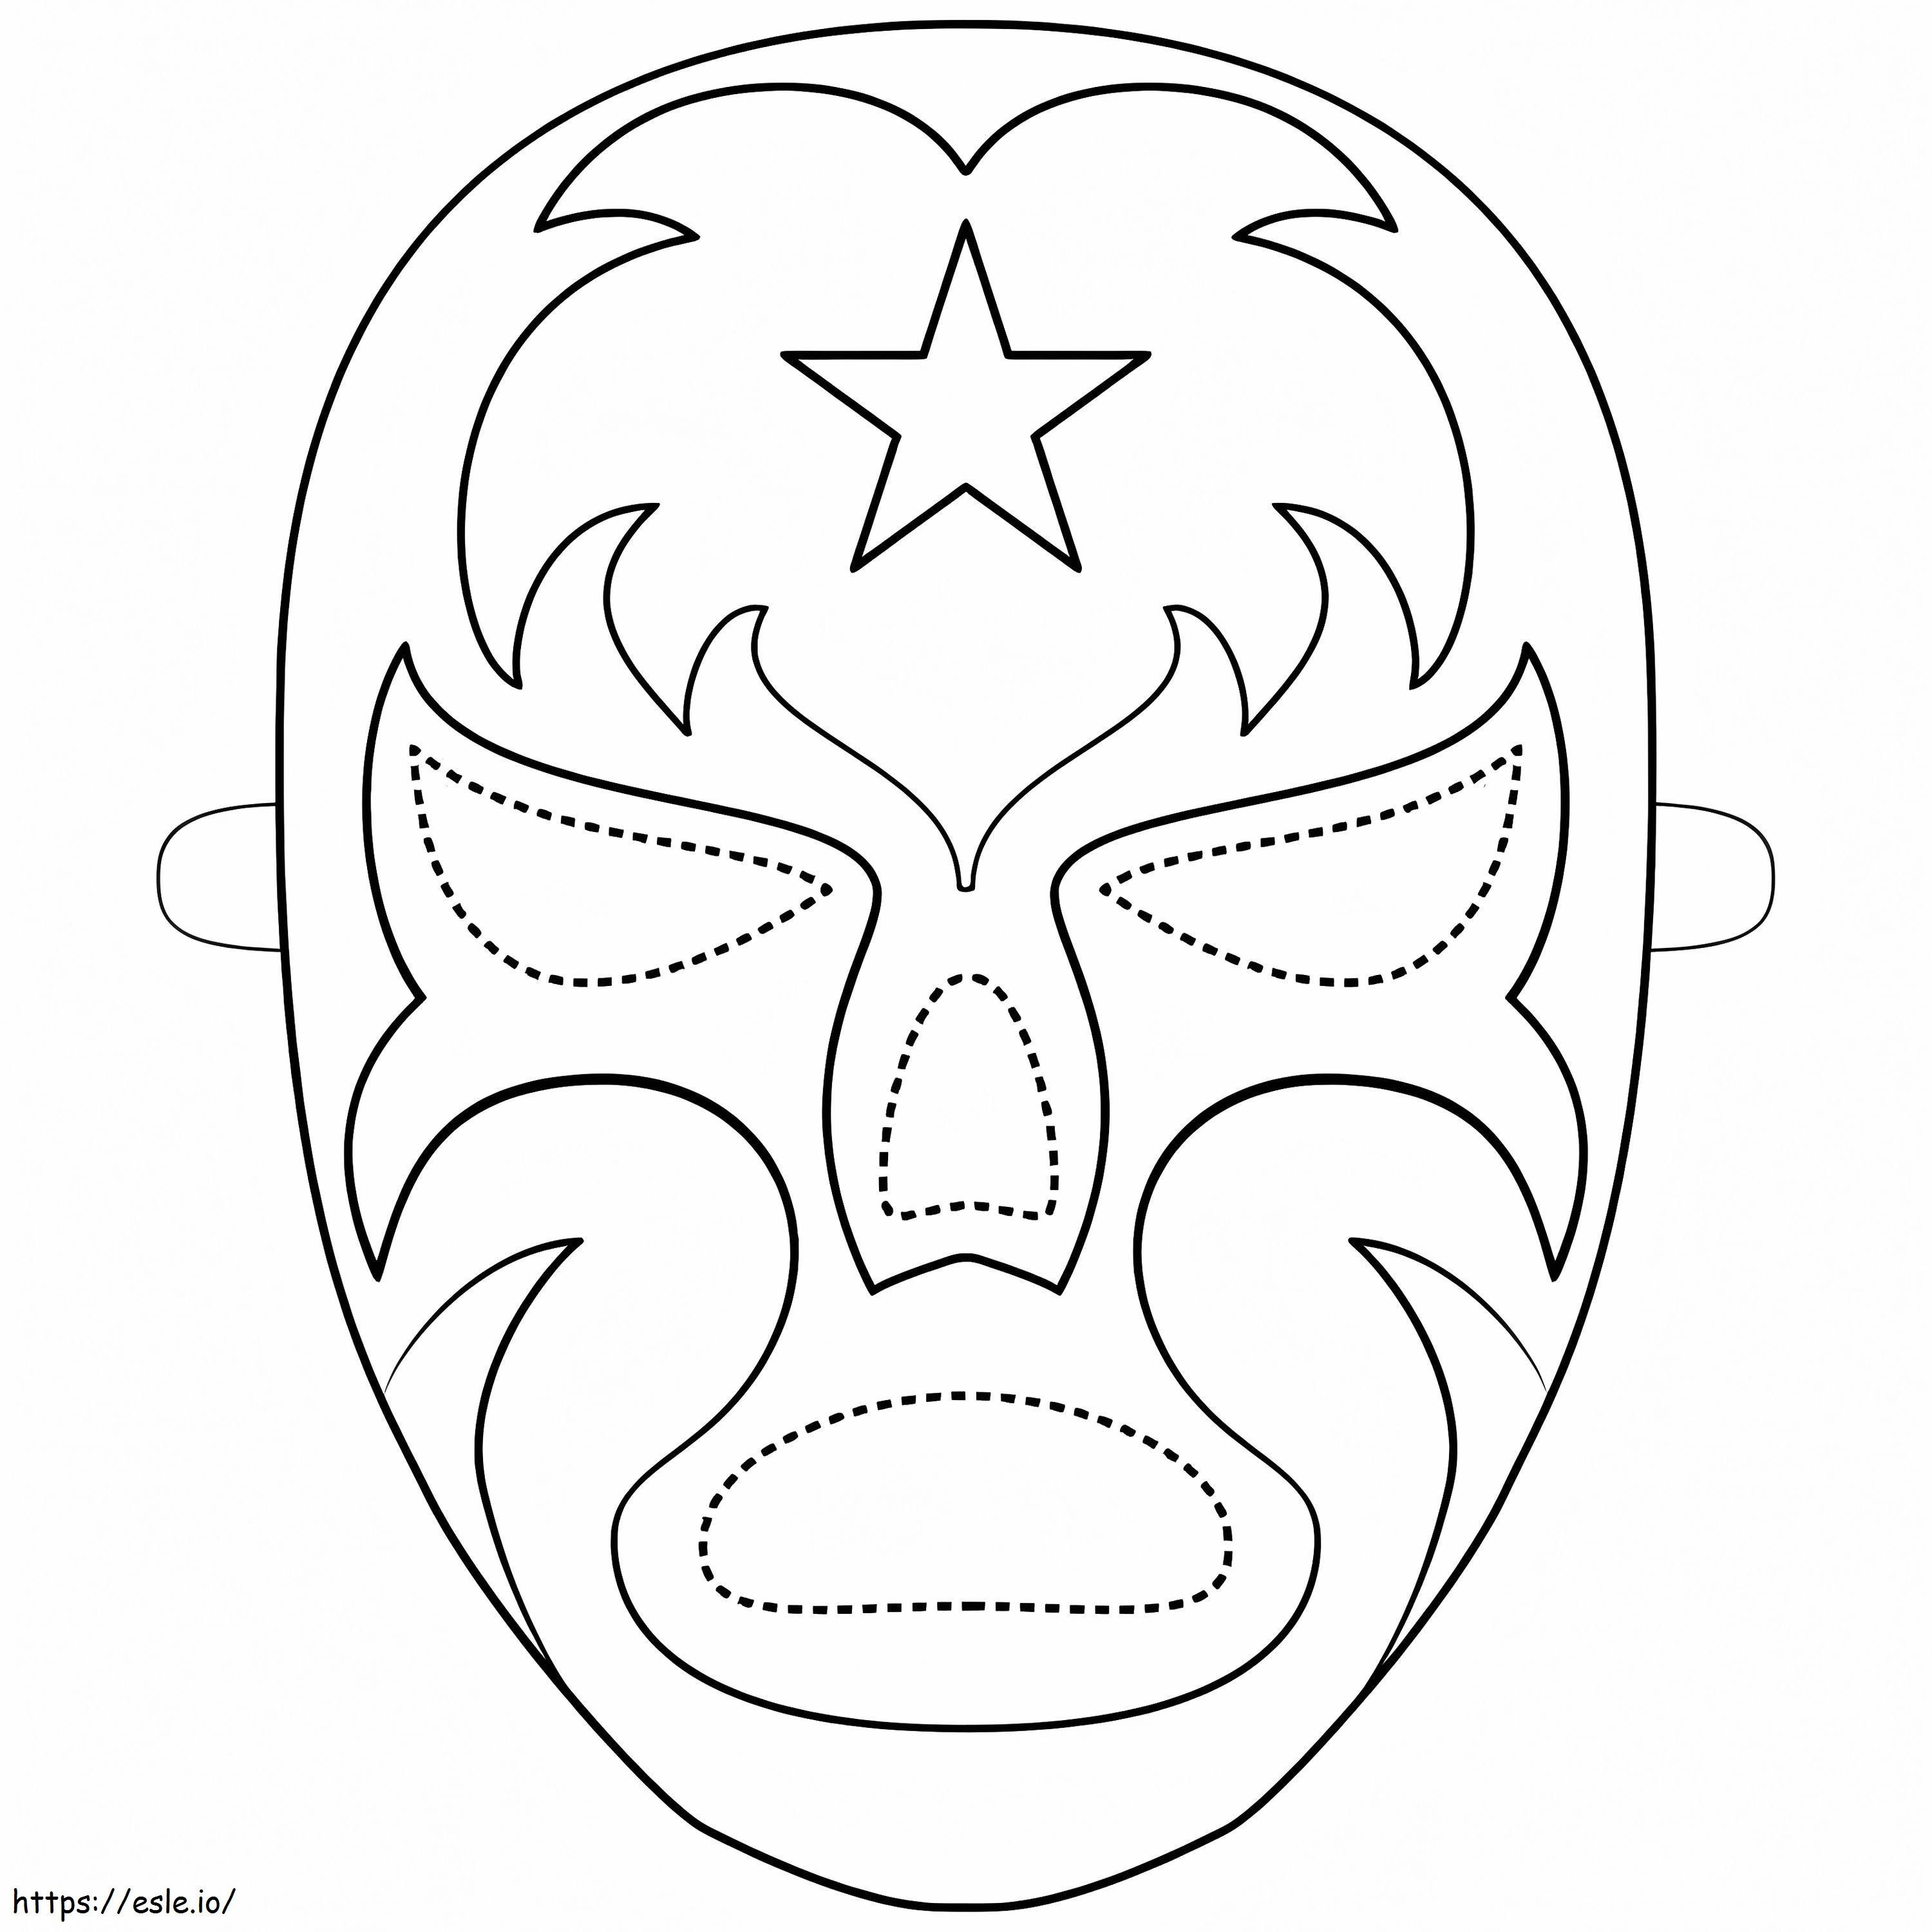 Güreşçi Maskesi boyama